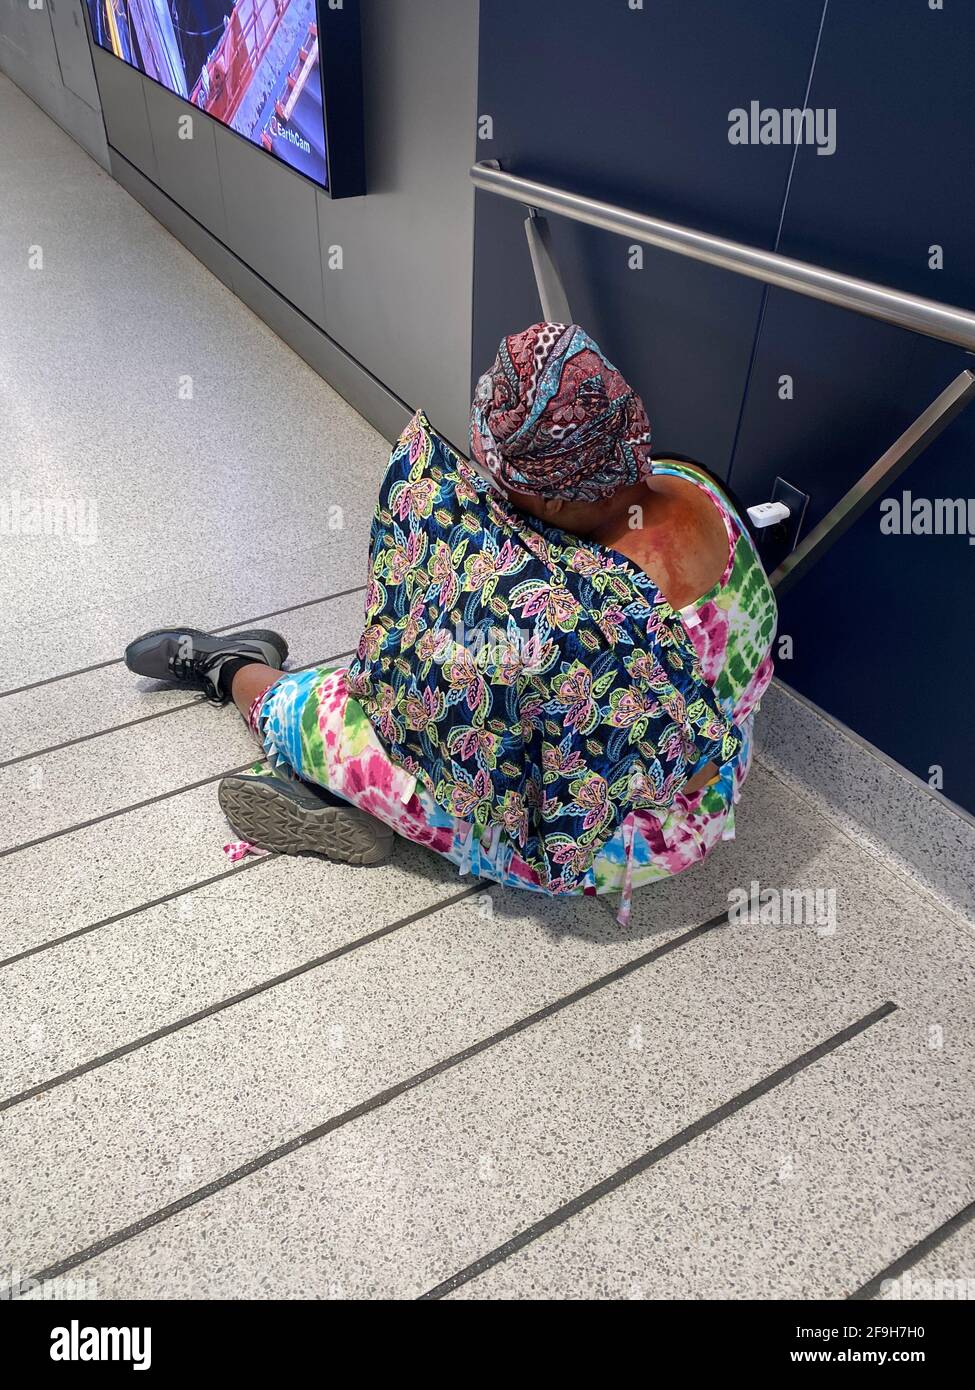 Eine scheinbar obdachlose Frau in farbenfrohem Kleid sitzt an einer Auffahrt zur neuen Moynihan Train Hall am Penn Station in New York City. Stockfoto